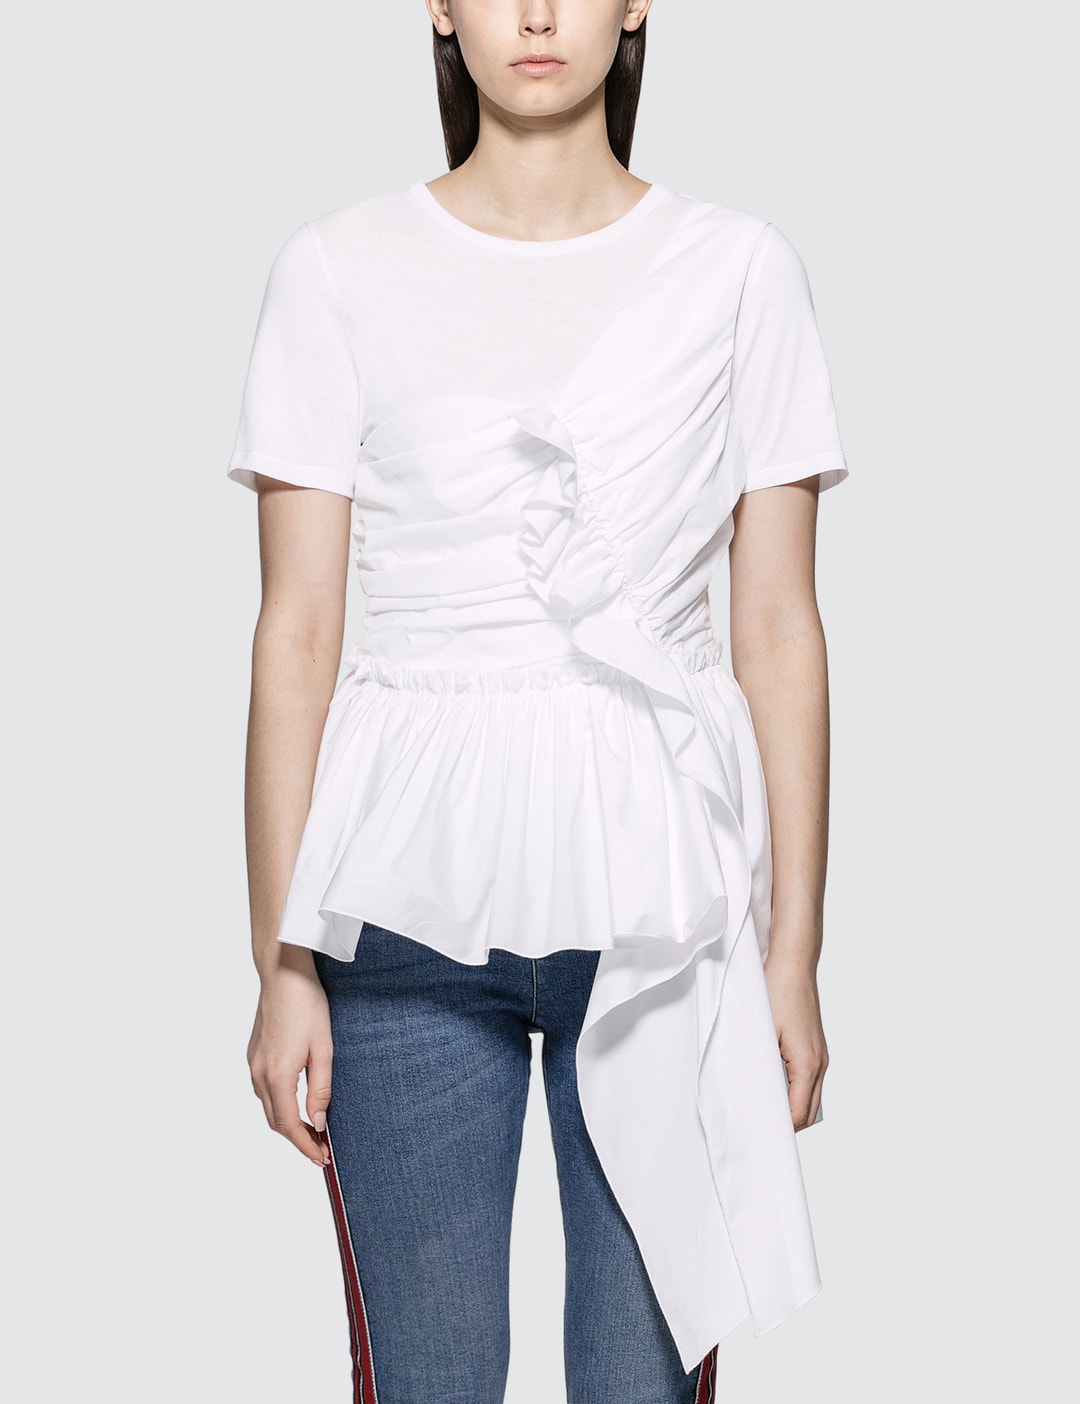 Alexander McQueen - Deconstructed Peplum T-shirt | HBX - Globally ...